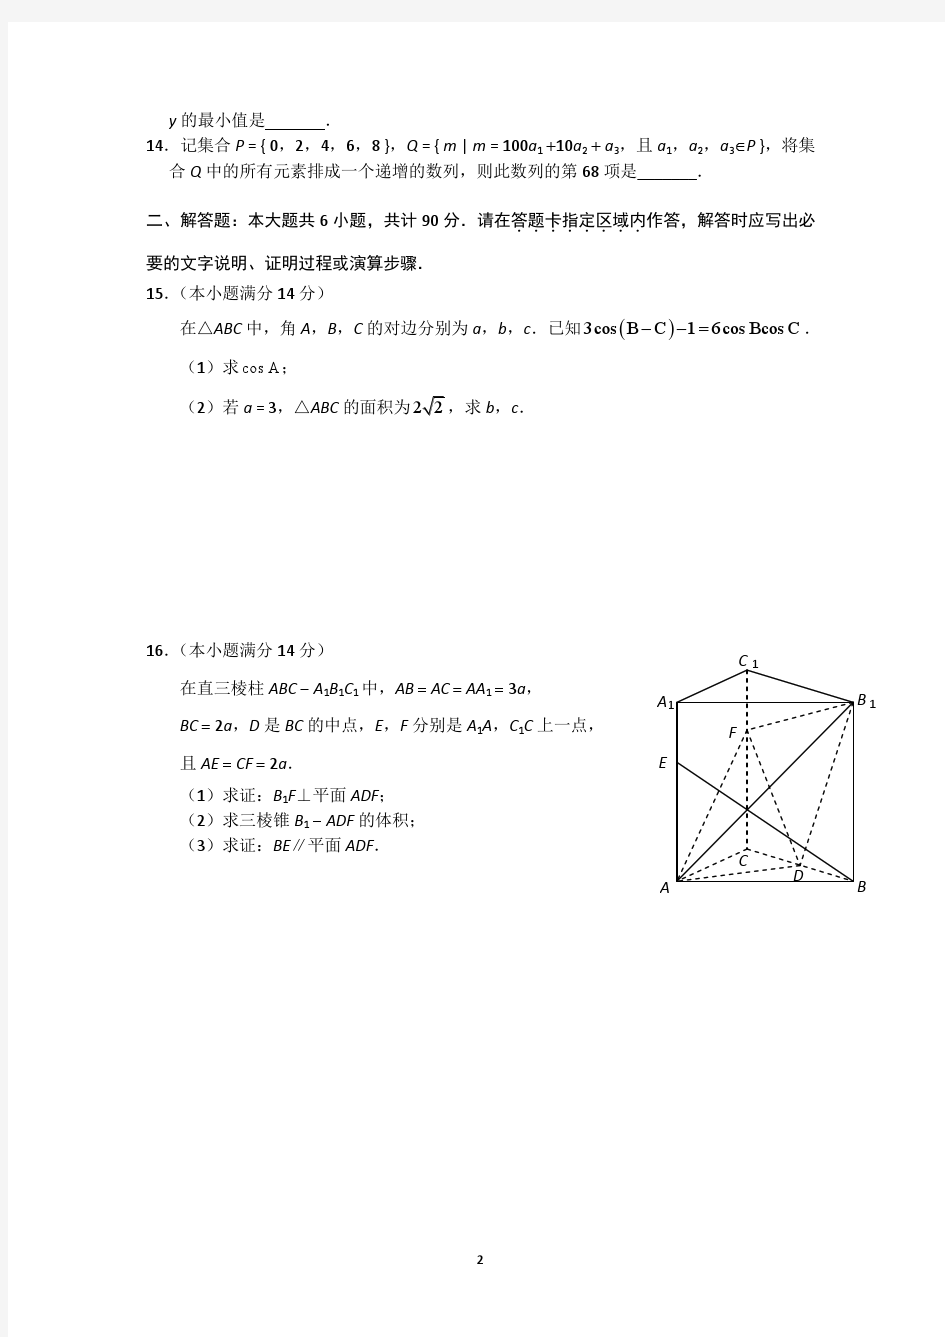 苏州大学2013届高三高考考前指导卷(1) 数学试题